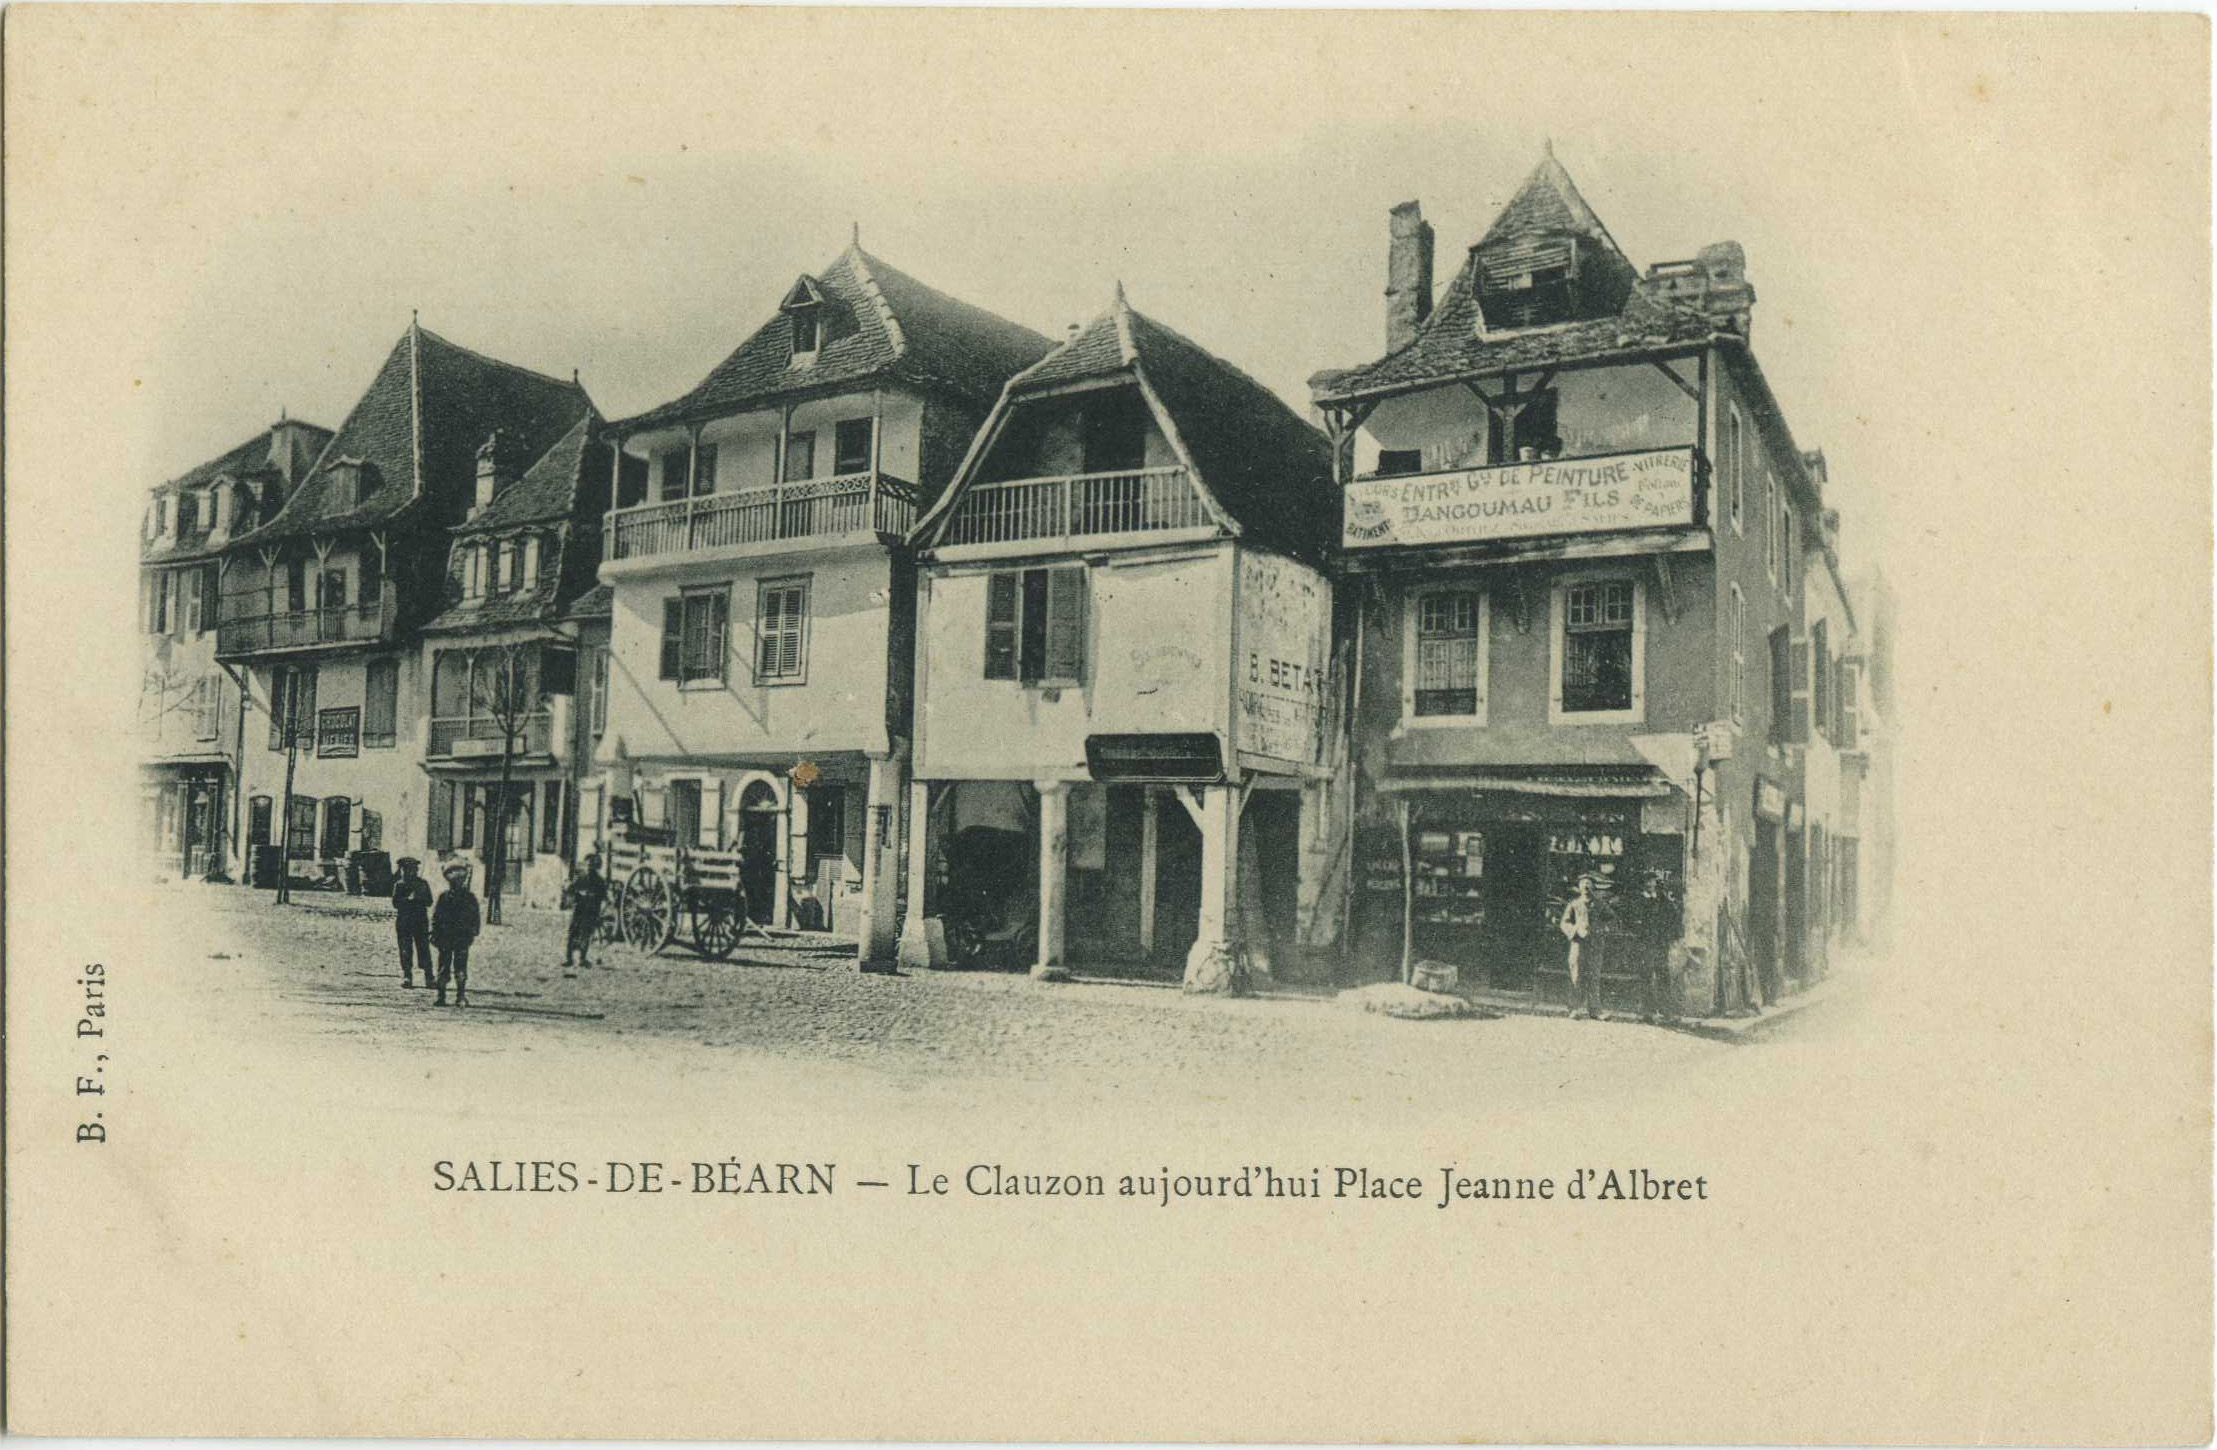 Salies-de-Béarn - Le Clauzon aujourd'hui Place Jeanne d"Albret